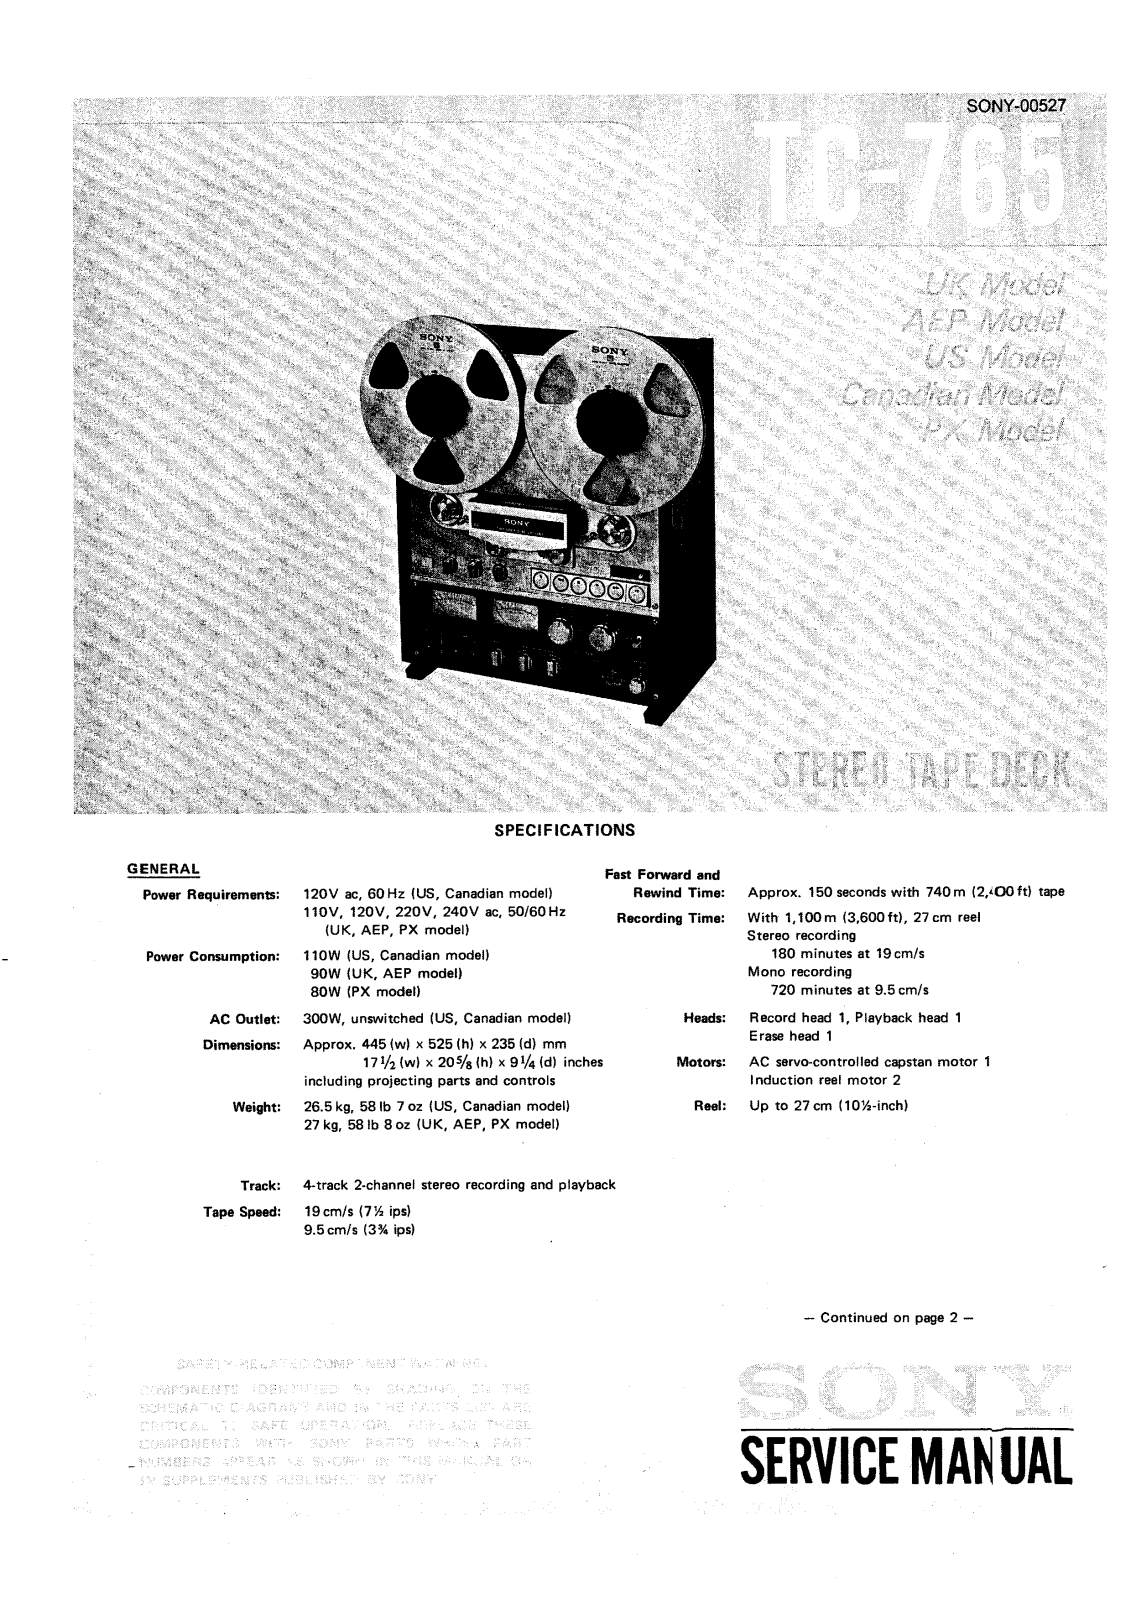 Sony TC-765 Service manual